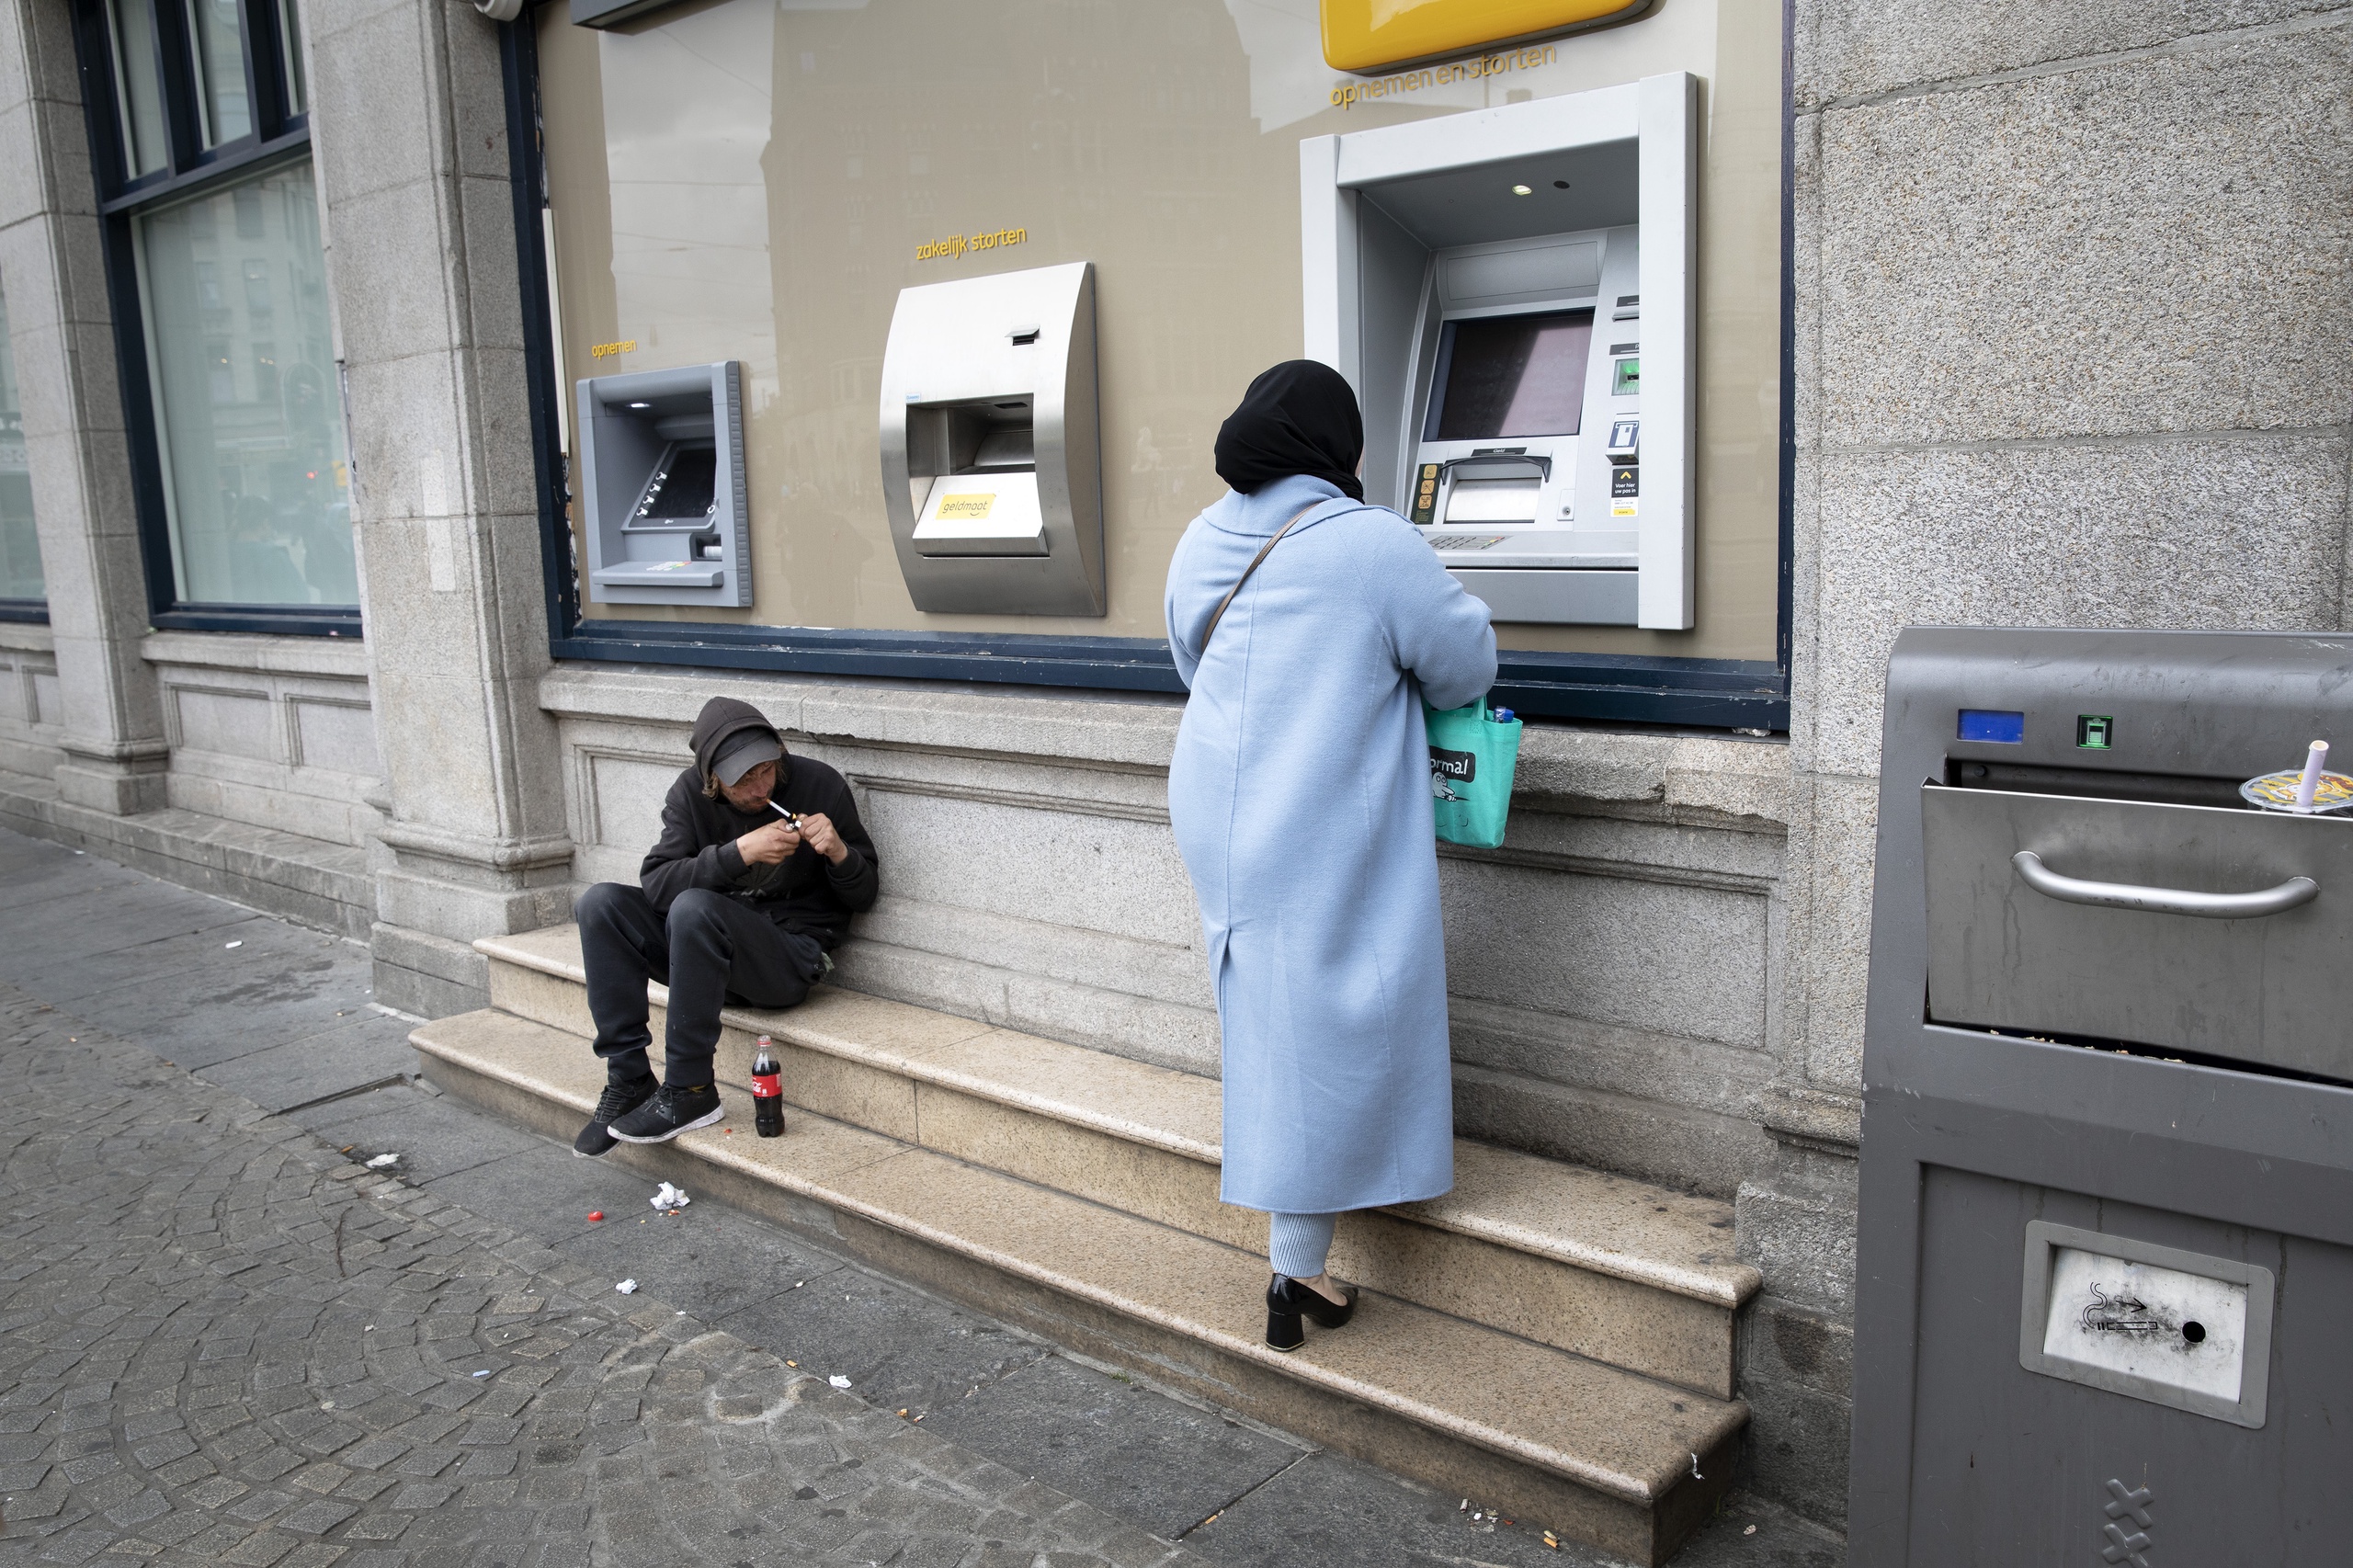 Geldautomaat in het centrum van Amsterdam